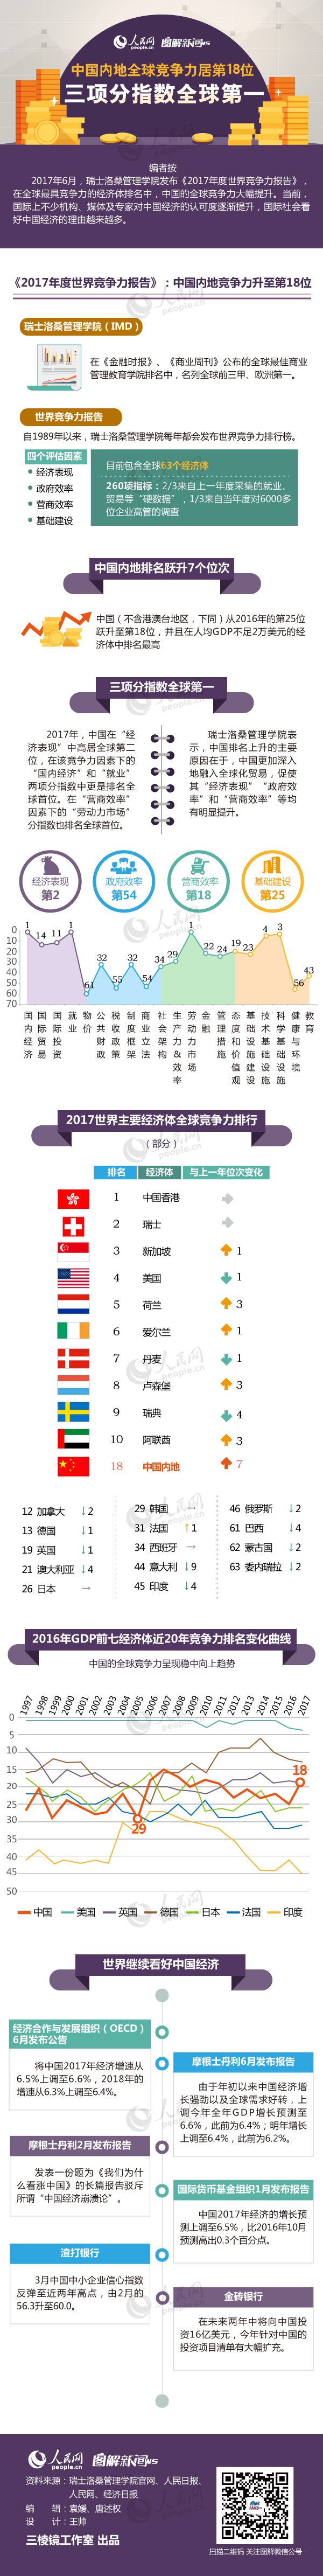 图解:中国内地全球竞争力居第18位 三项分指数全球第一